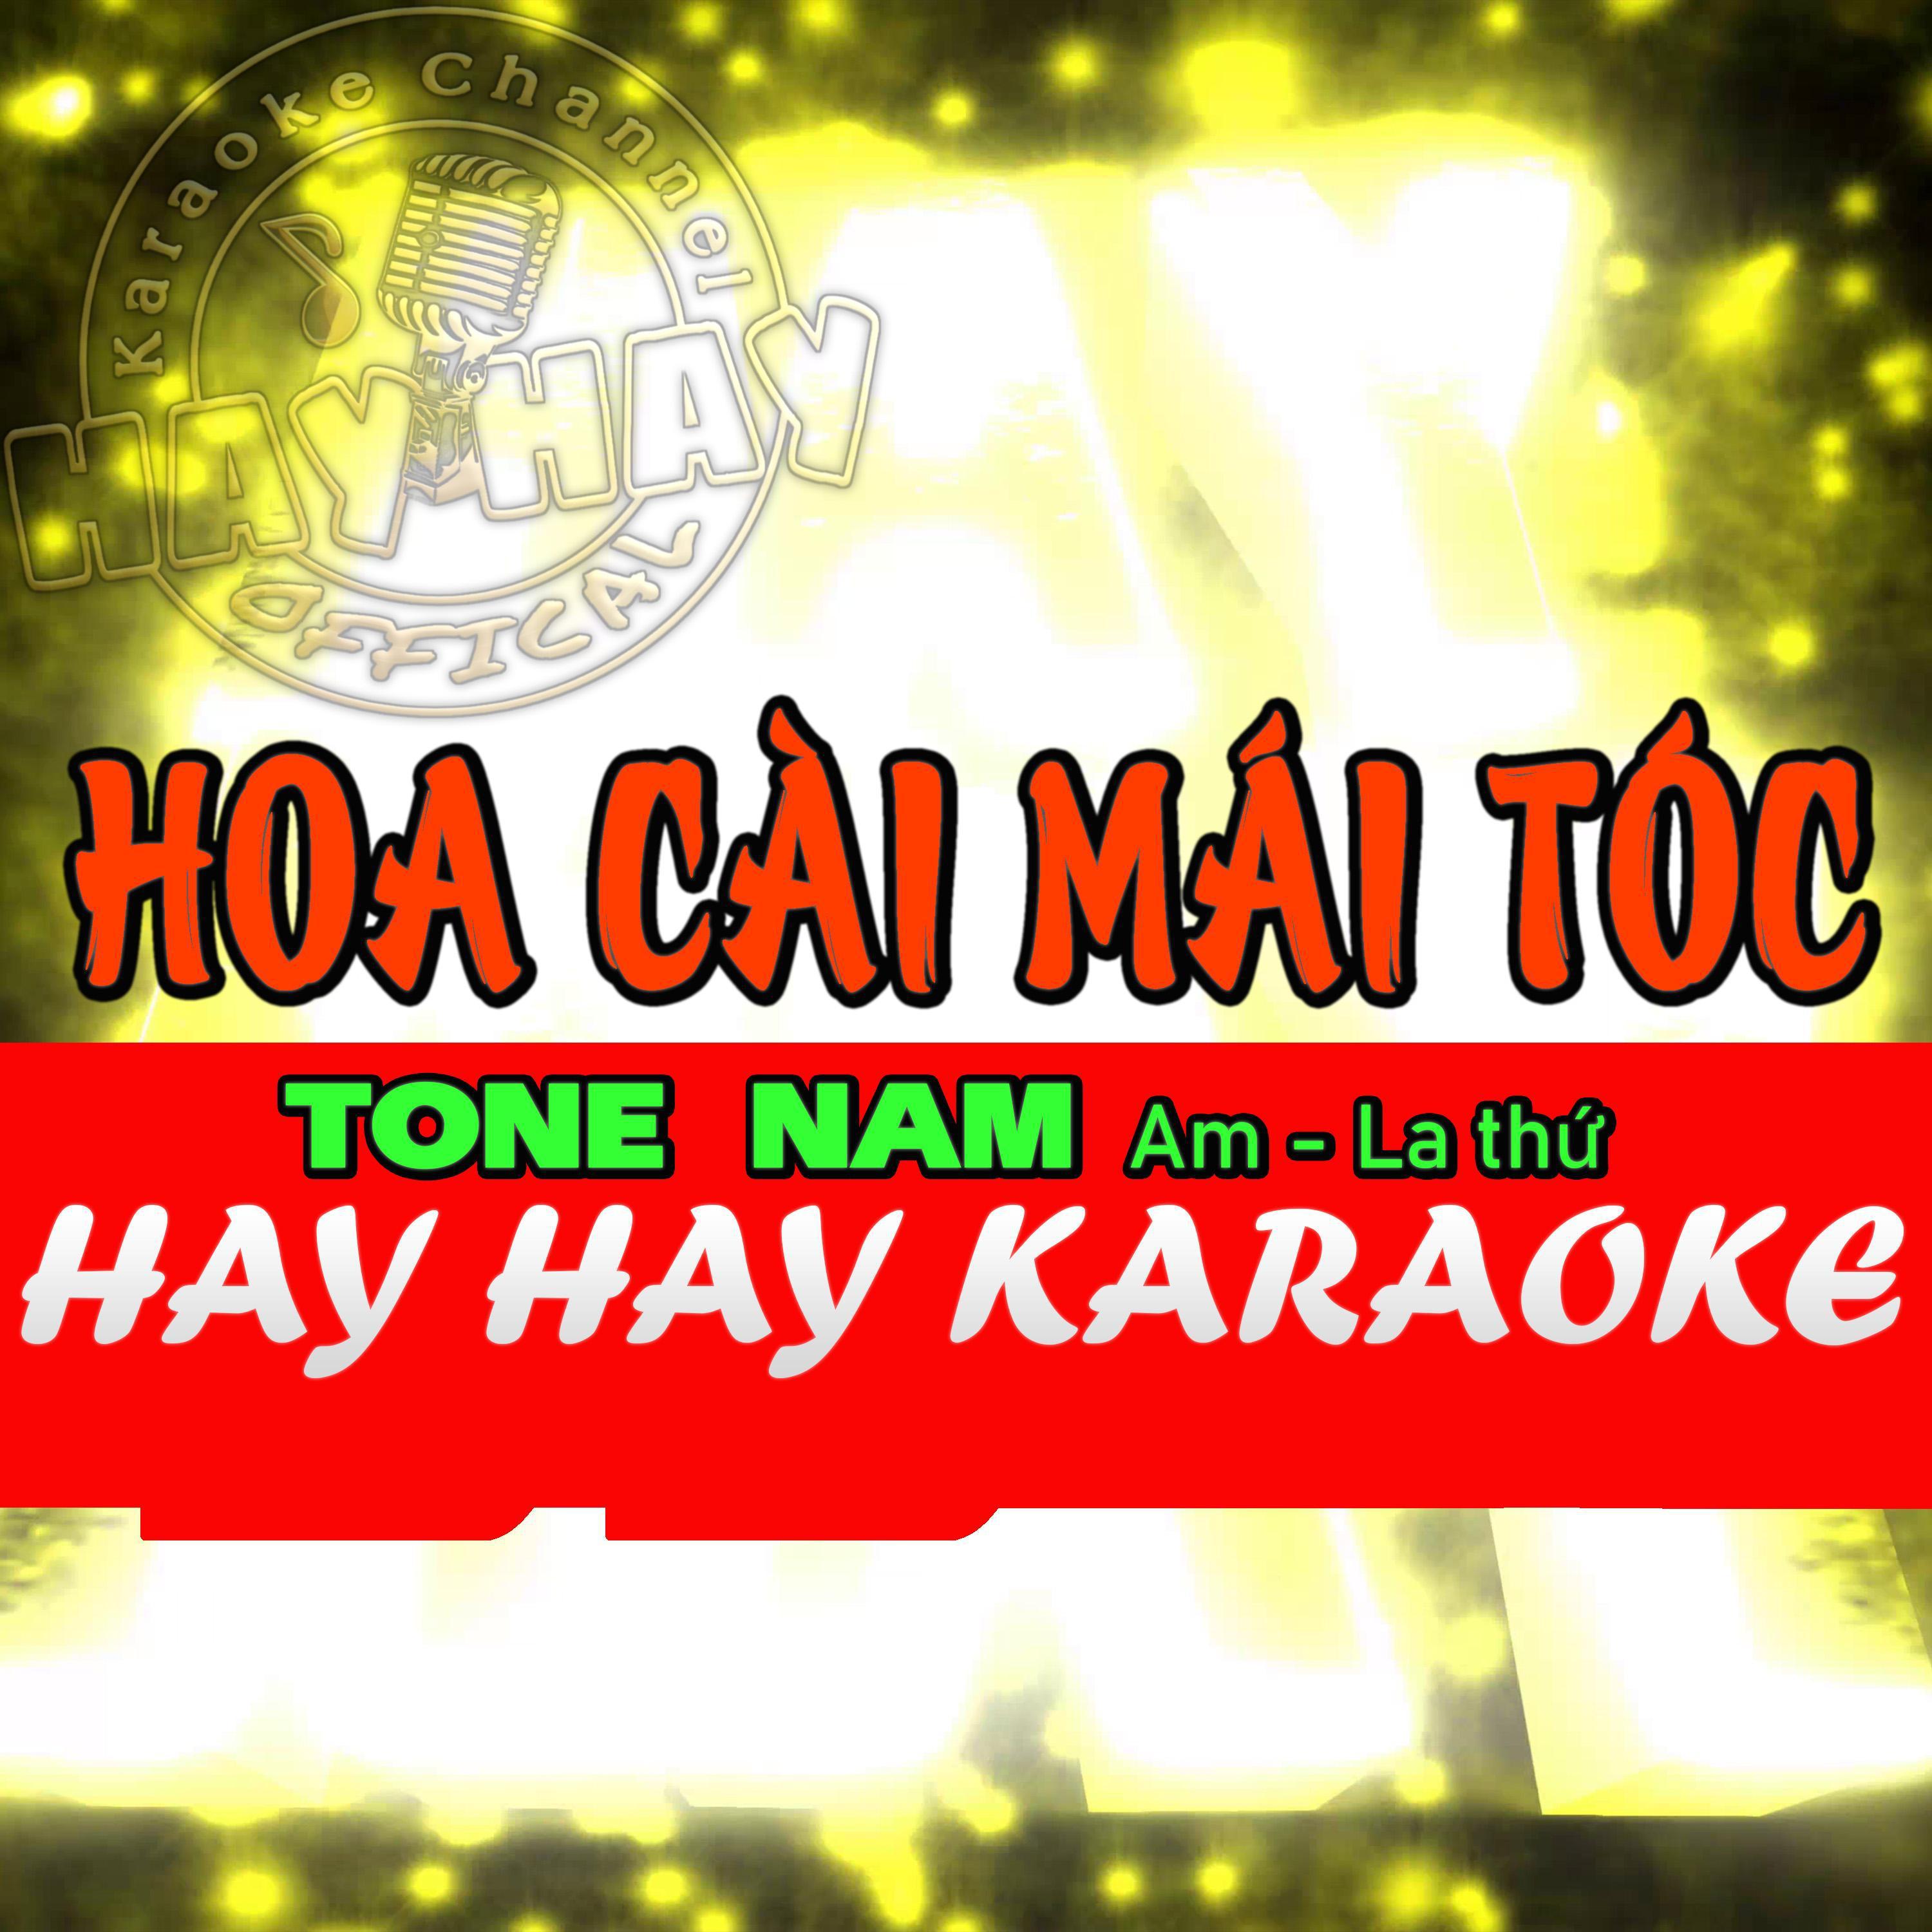 Tuấn Thành - HOA CÀI MÁI TÓC Karaoke TONE Nam (Am)